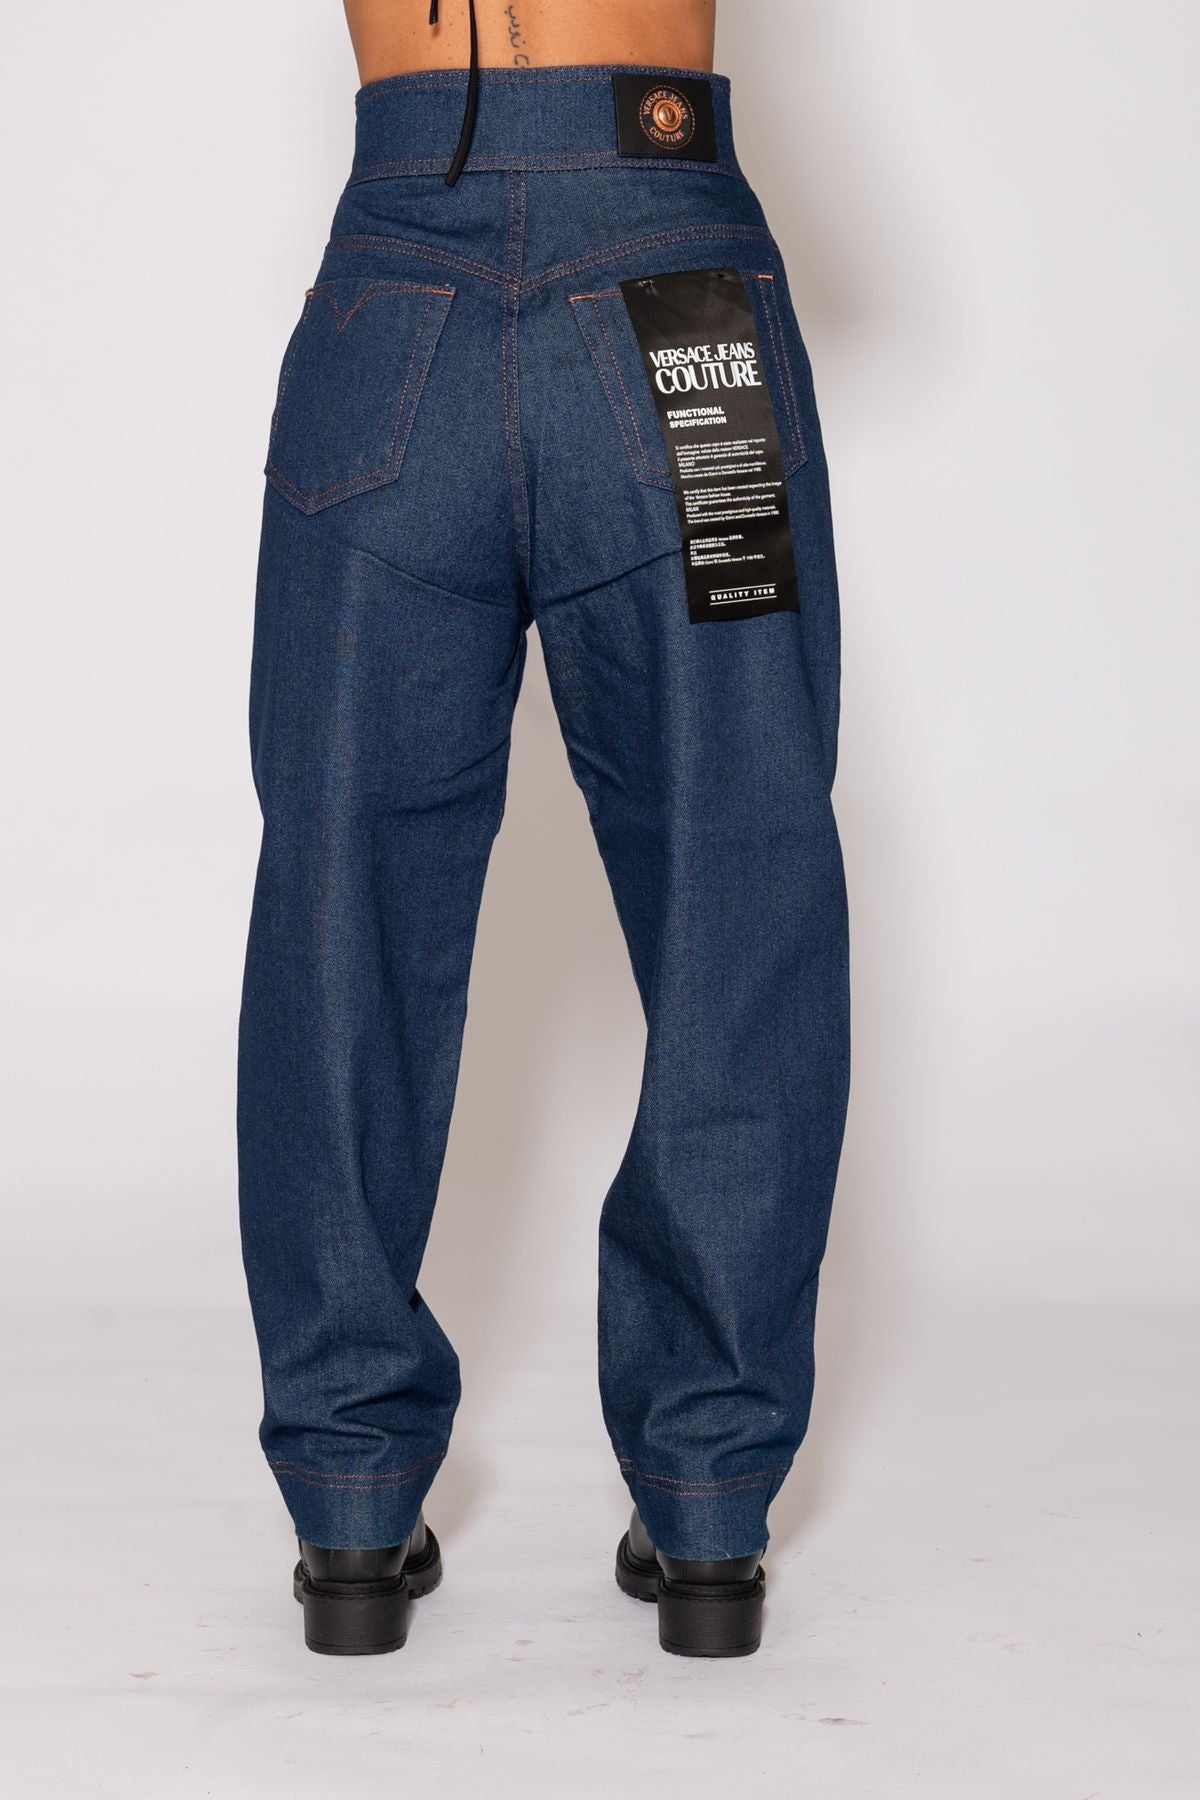 75hab508dw023l54904 - jeans - versace jeans couture